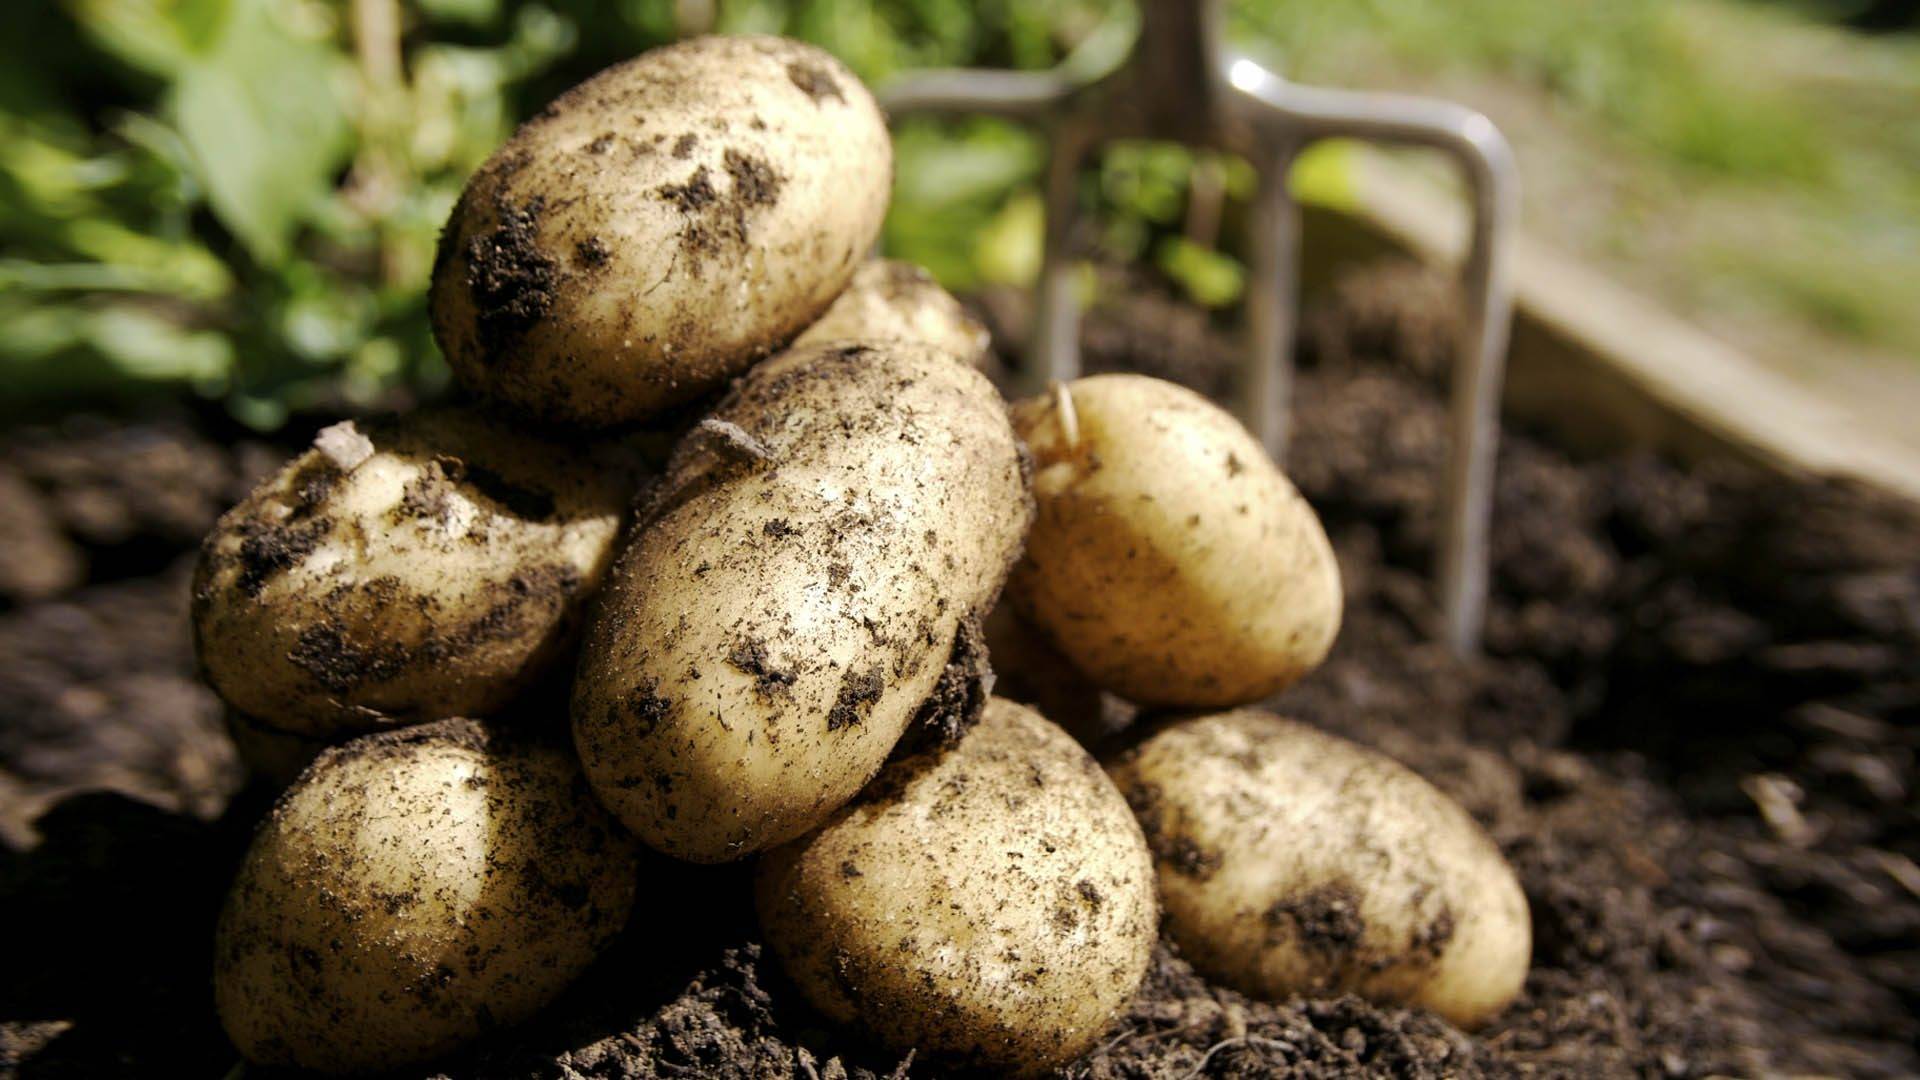 Джелли: описание семенного сорта картофеля, характеристики, агротехника